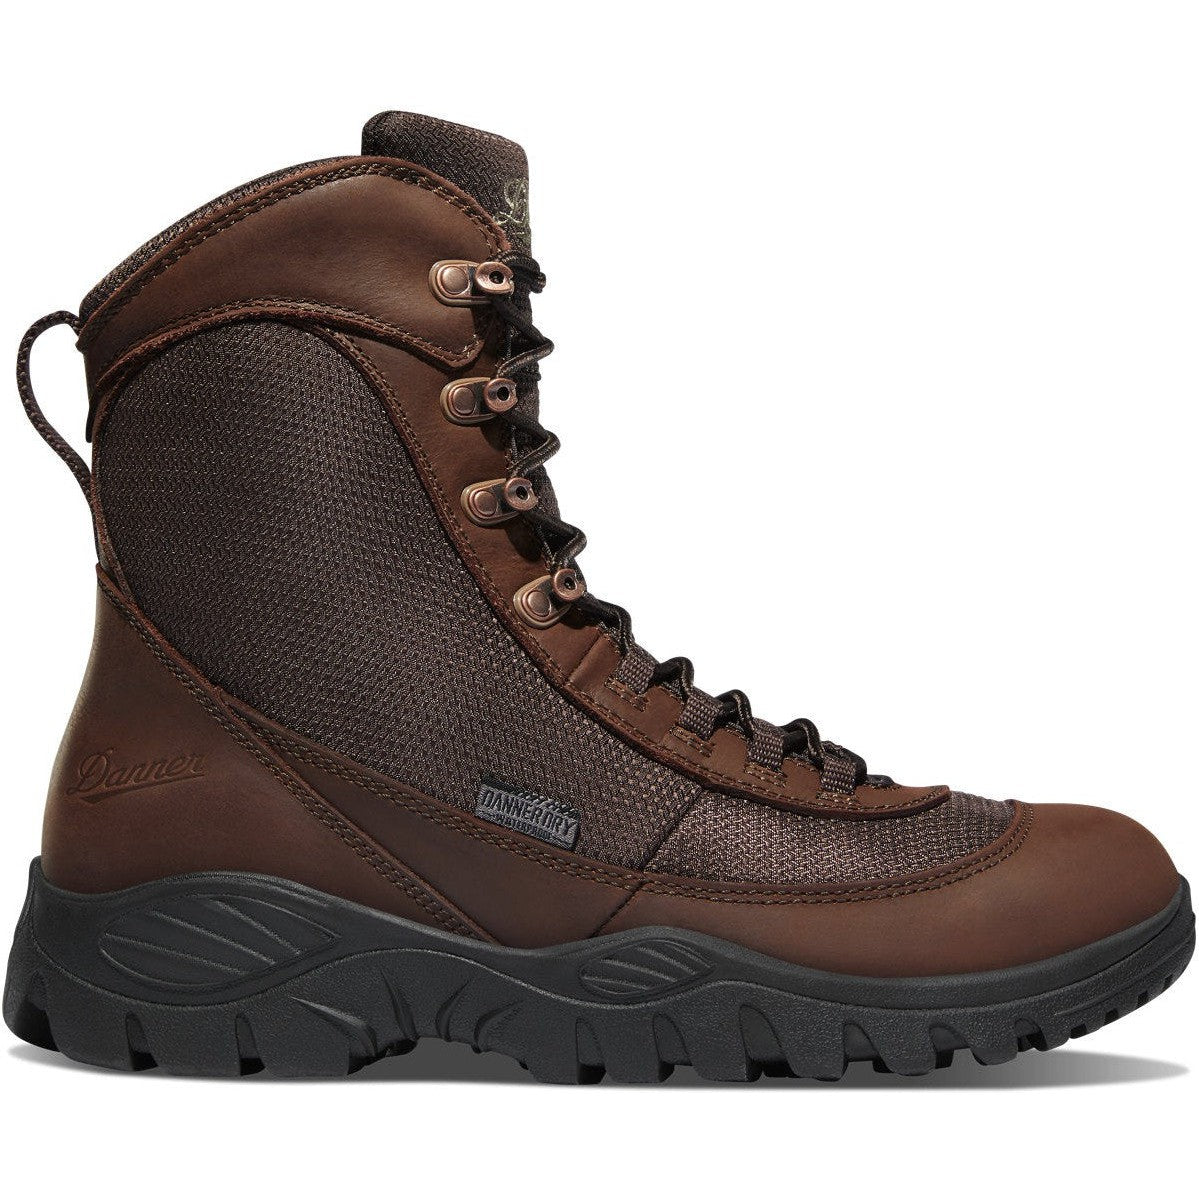 Danner Men's Element 8" Waterproof Hunt Boot - Brown - 47130 7 / Medium / Brown - Overlook Boots